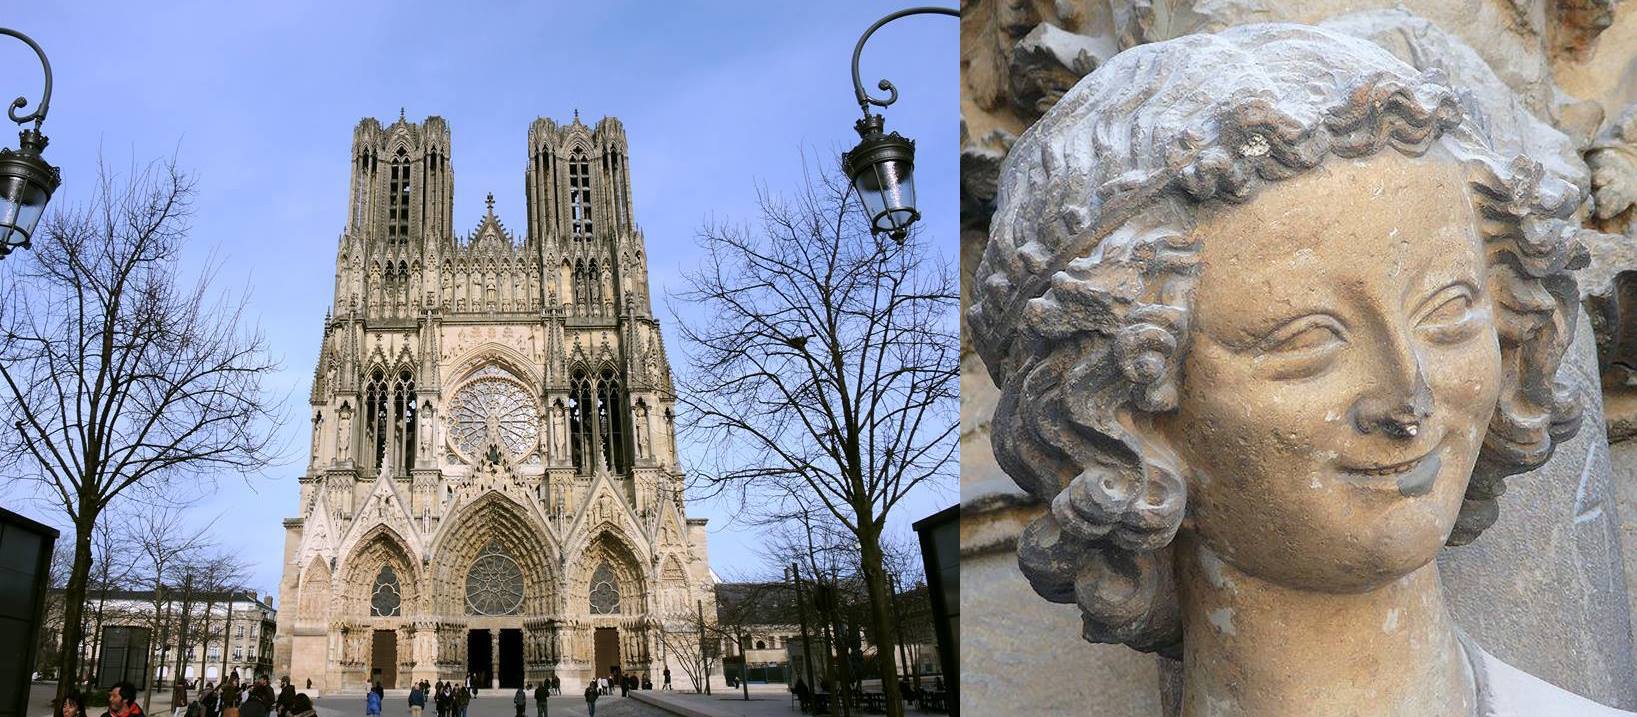 Katedra-Notre-Dame-de-Reims fot. Marcin Witamborski, Uśmiechnięty Anioł / Wikimedia Commons